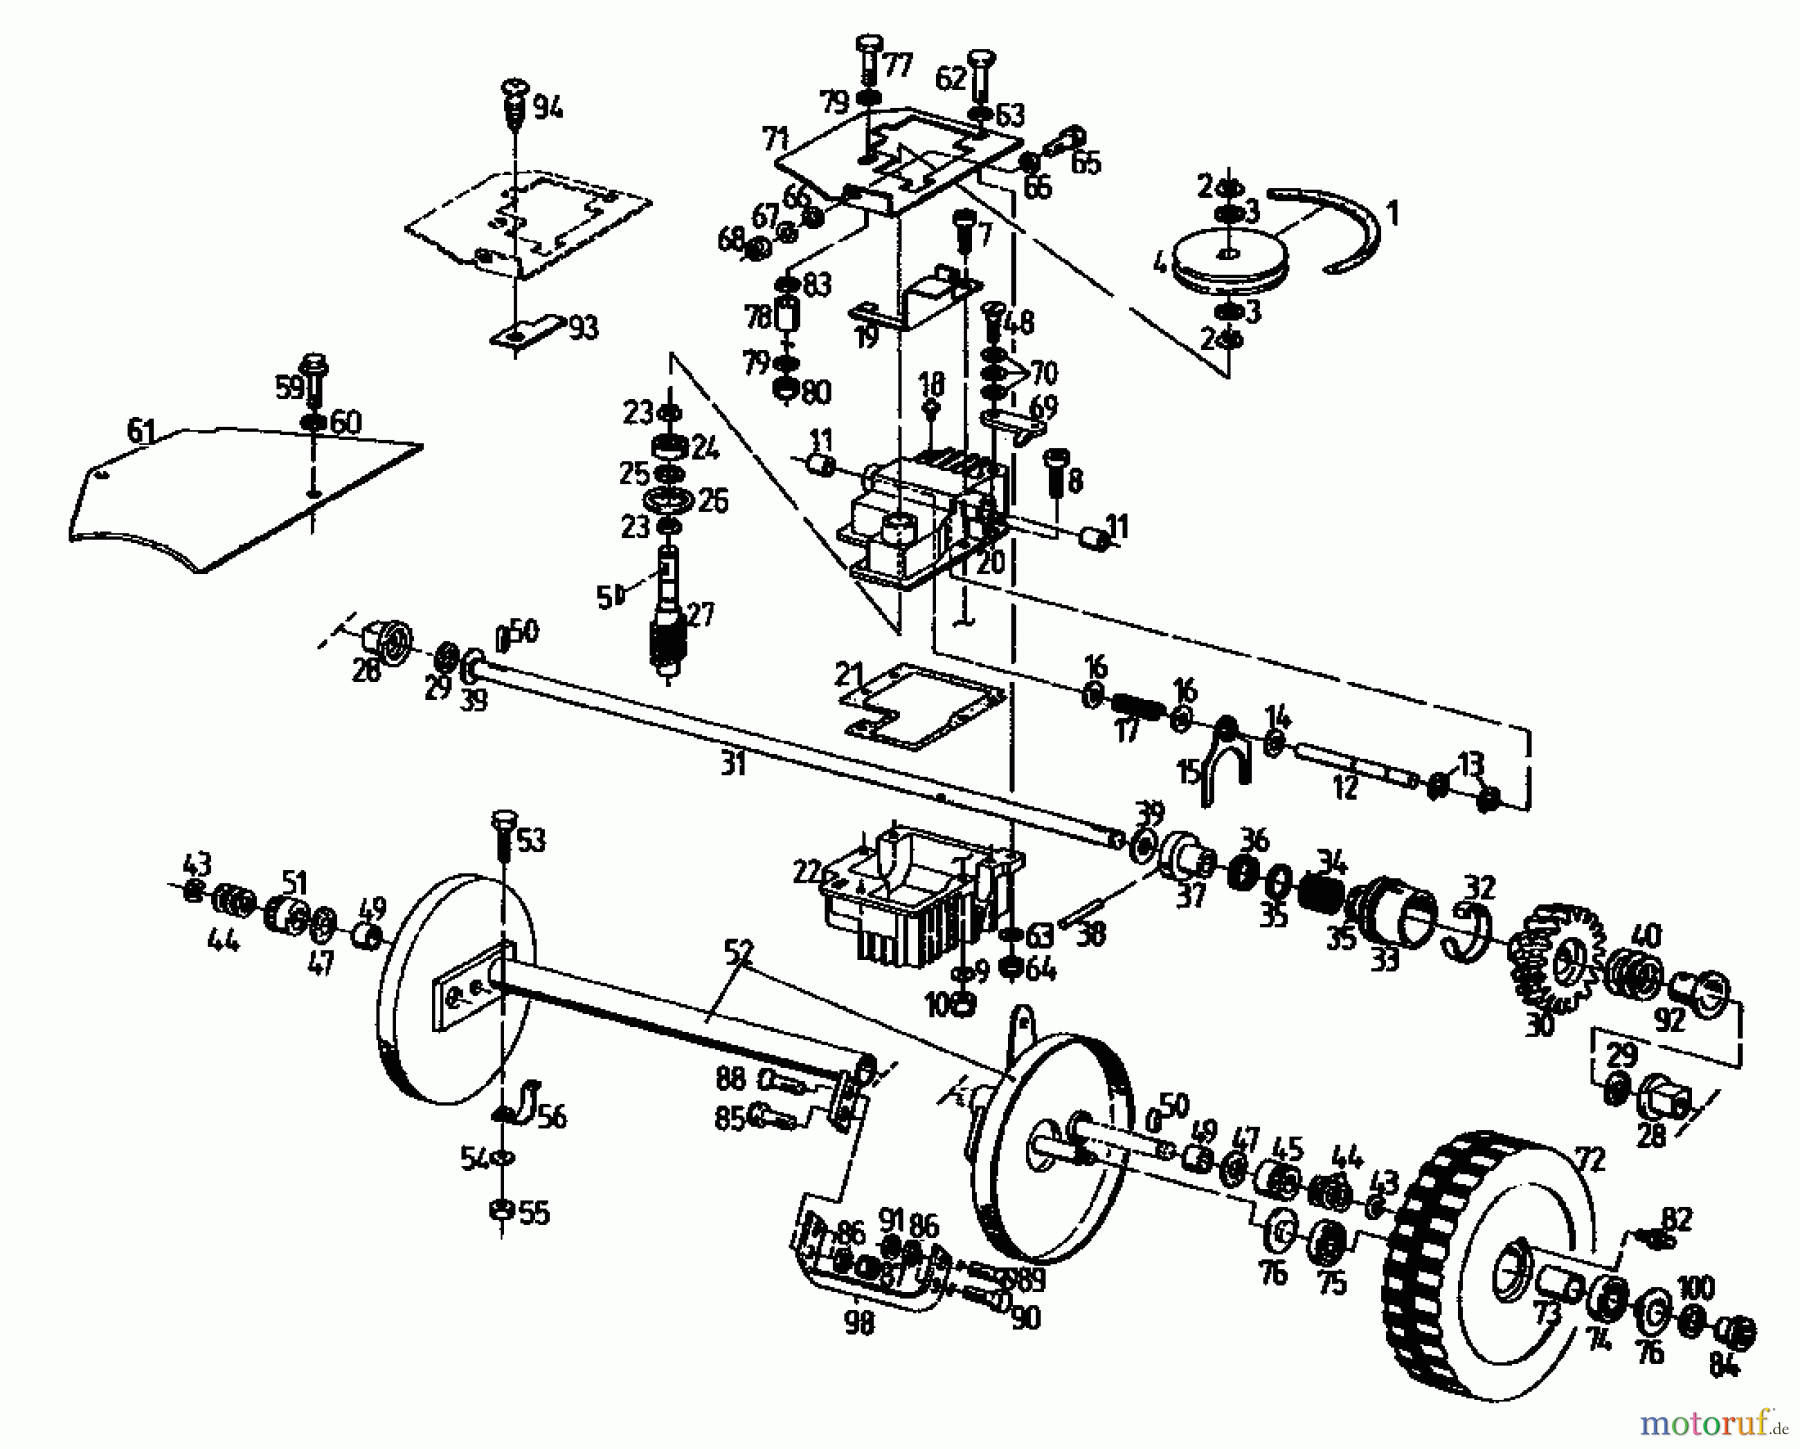  Gutbrod Motormäher mit Antrieb MH 534 PR 04017.03  (1996) Getriebe, Räder